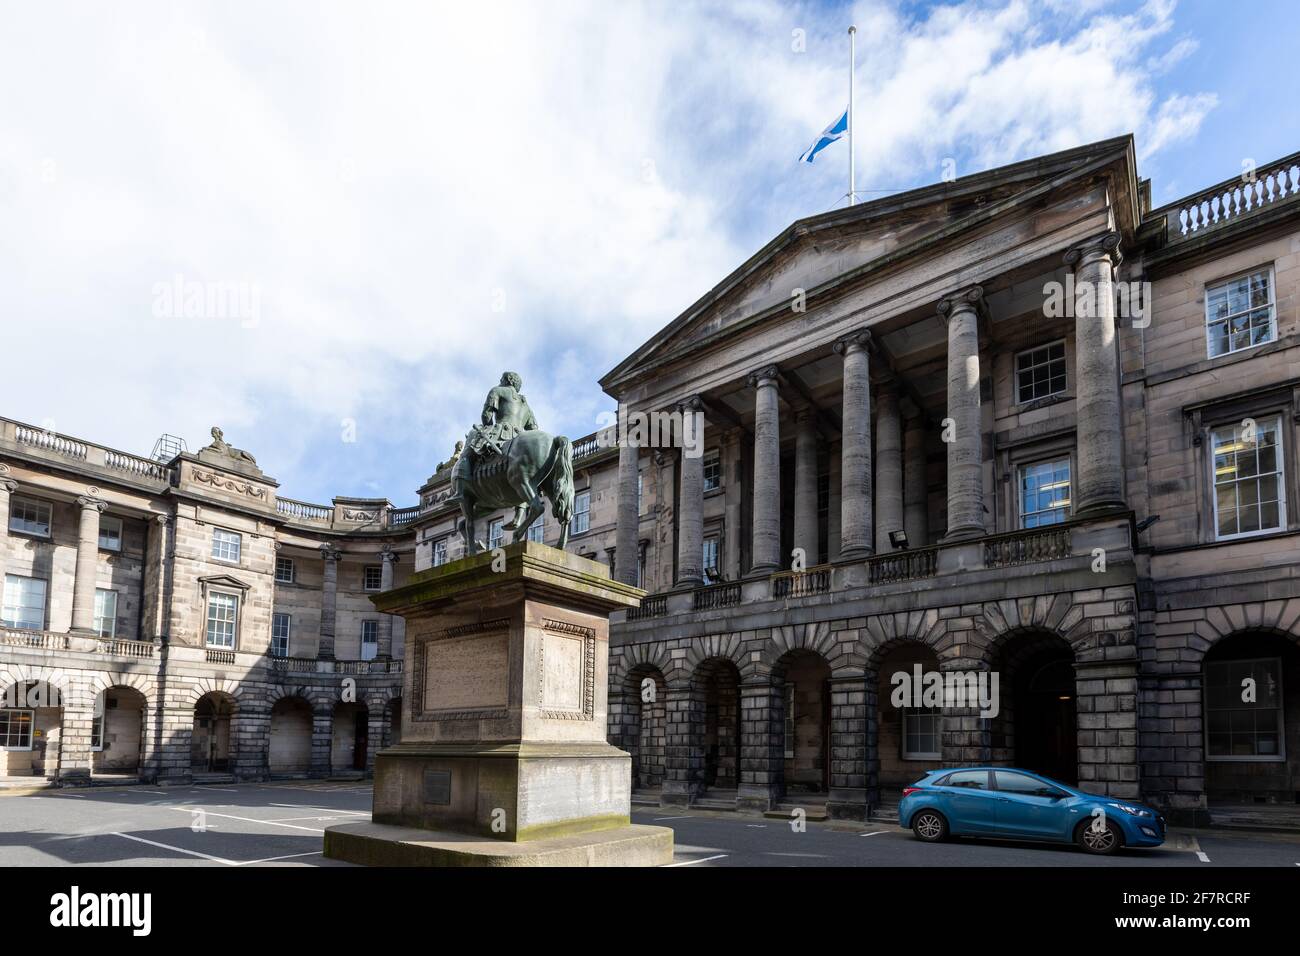 Édimbourg, Royaume-Uni. 9 avril 2021. Les drapeaux sur les bâtiments d'Édimbourg volent à mi-mât pour le duc d'Édimbourg crédit: David Coulson/Alay Live News Banque D'Images